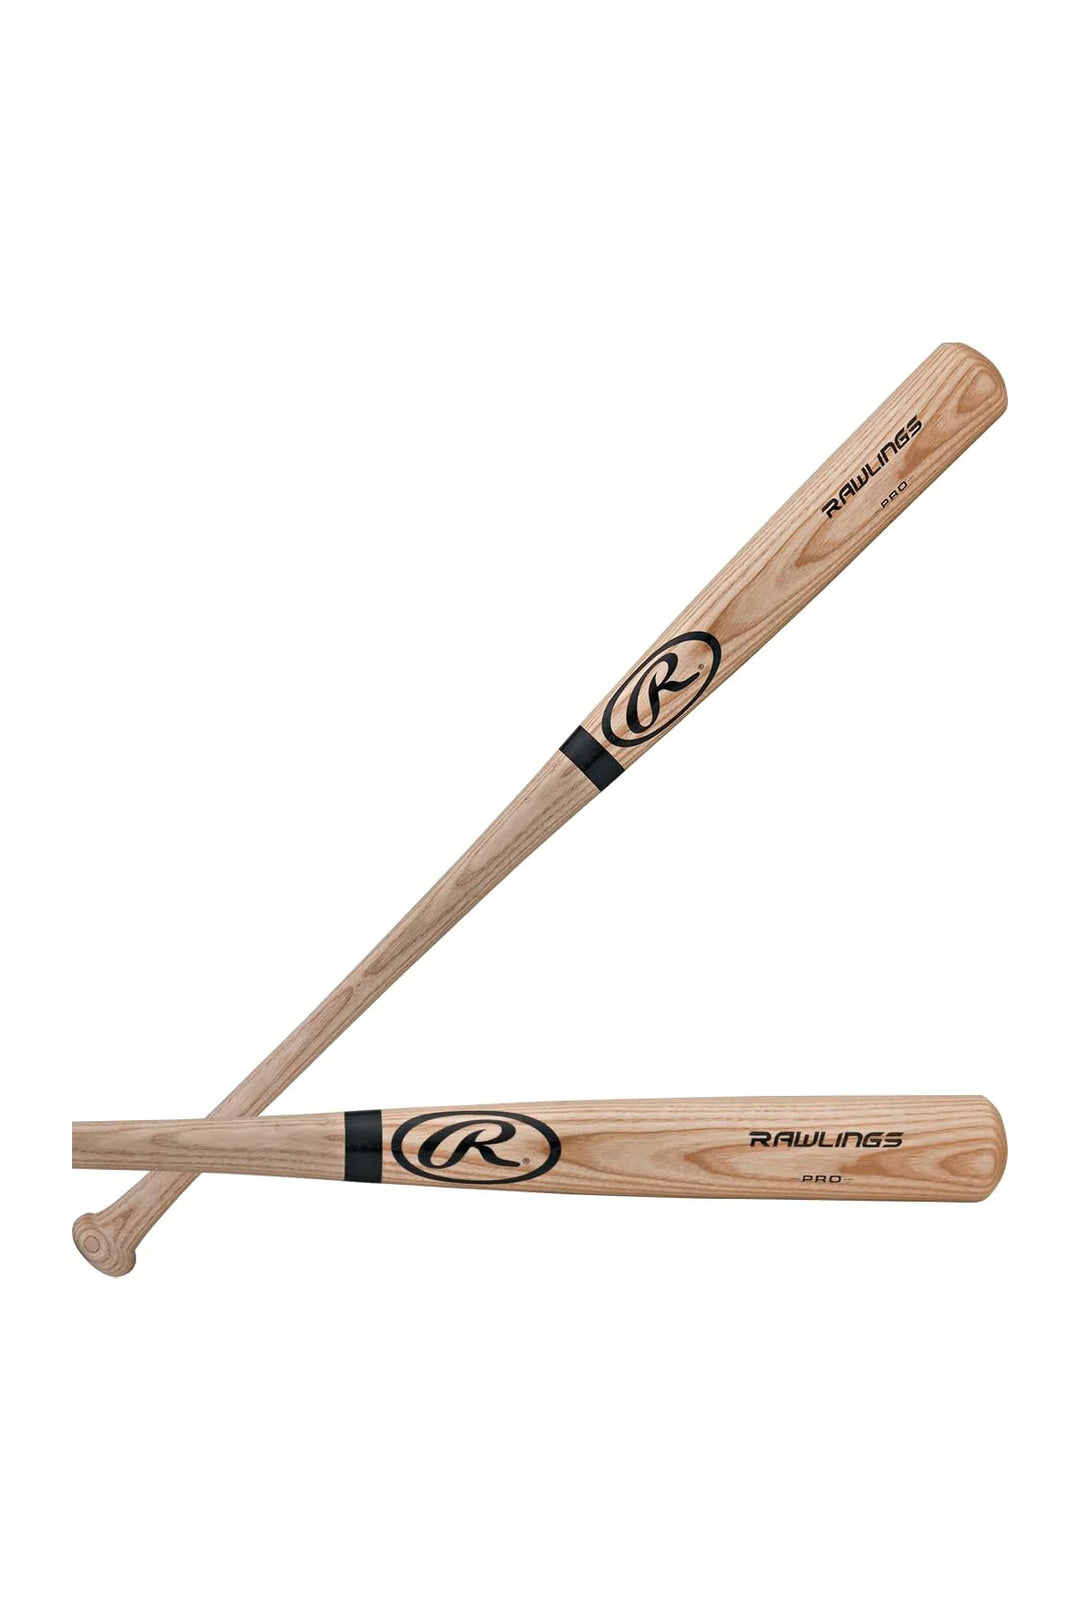 Rawling Pro Adirondack Ash Baseball Bat Natural